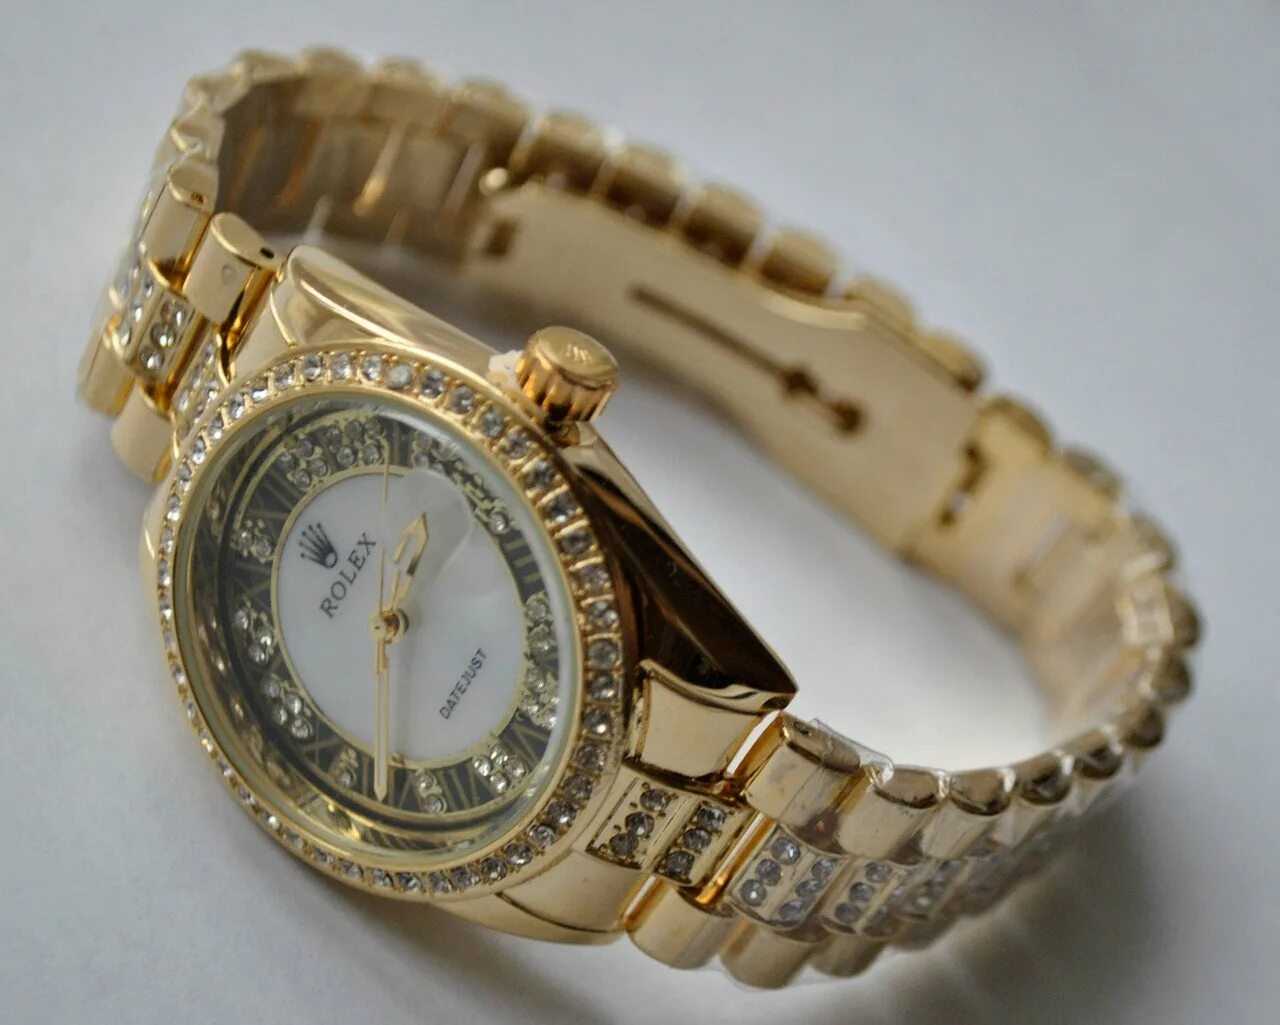 Купить ролекс оригинал женские. Ролекс Geneva женские. Rolex Geneve. Часы Geneva женские золотые с бриллиантами. Часы ролекс золотые.